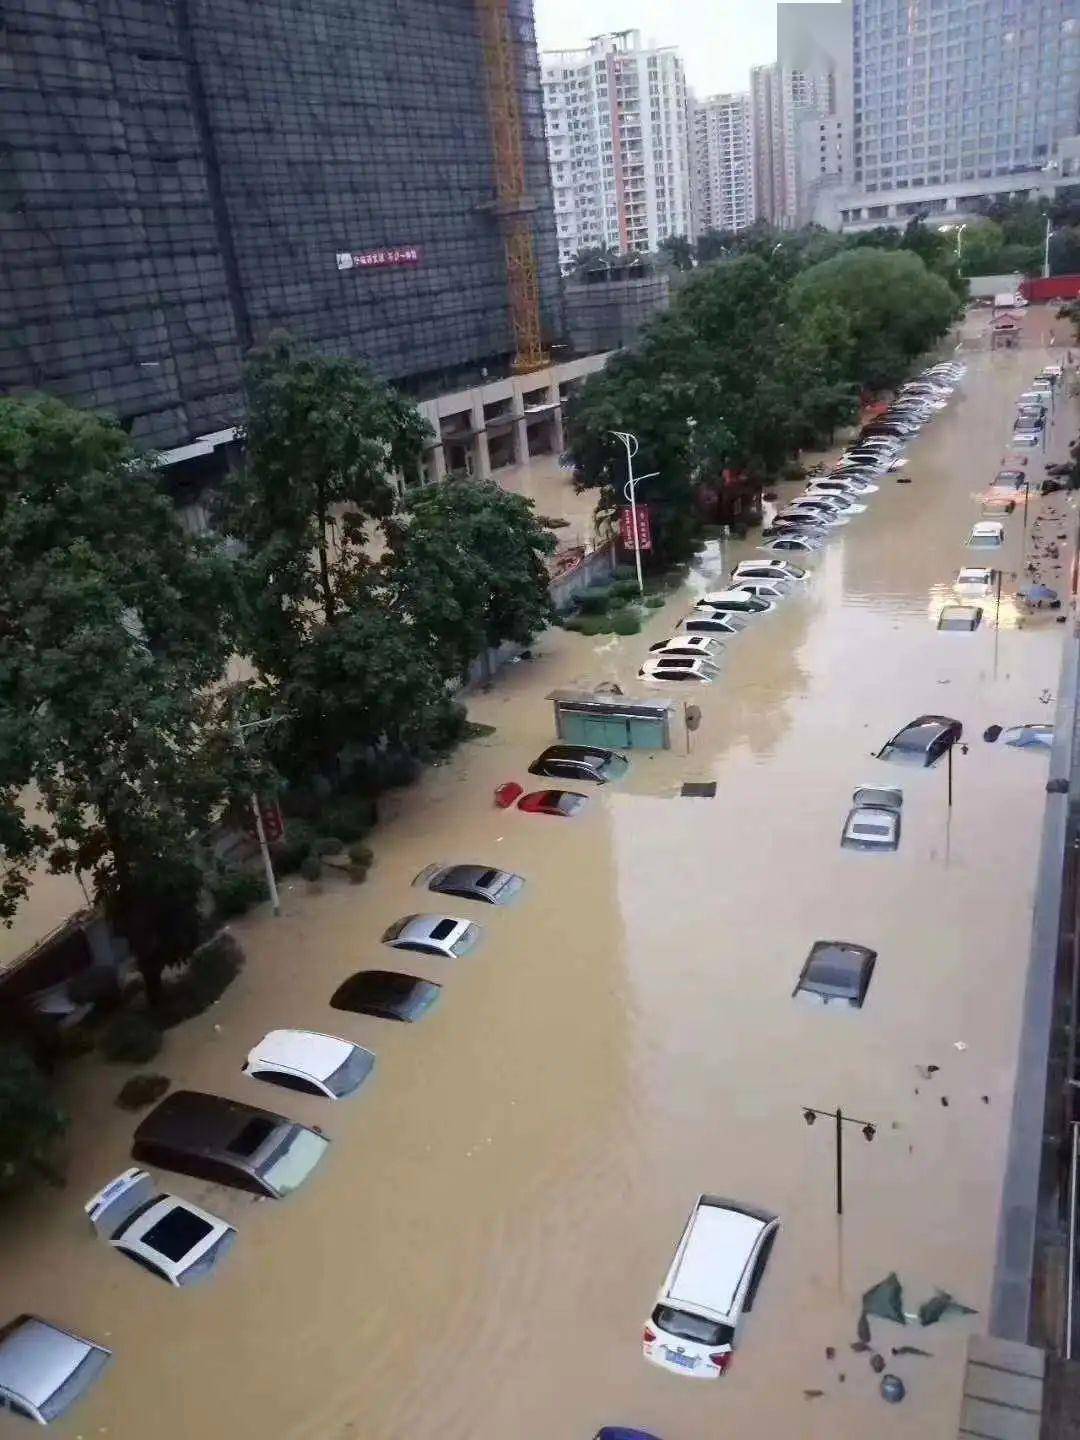 可怕!昨晚广东省出现大暴雨,大水淹没街道